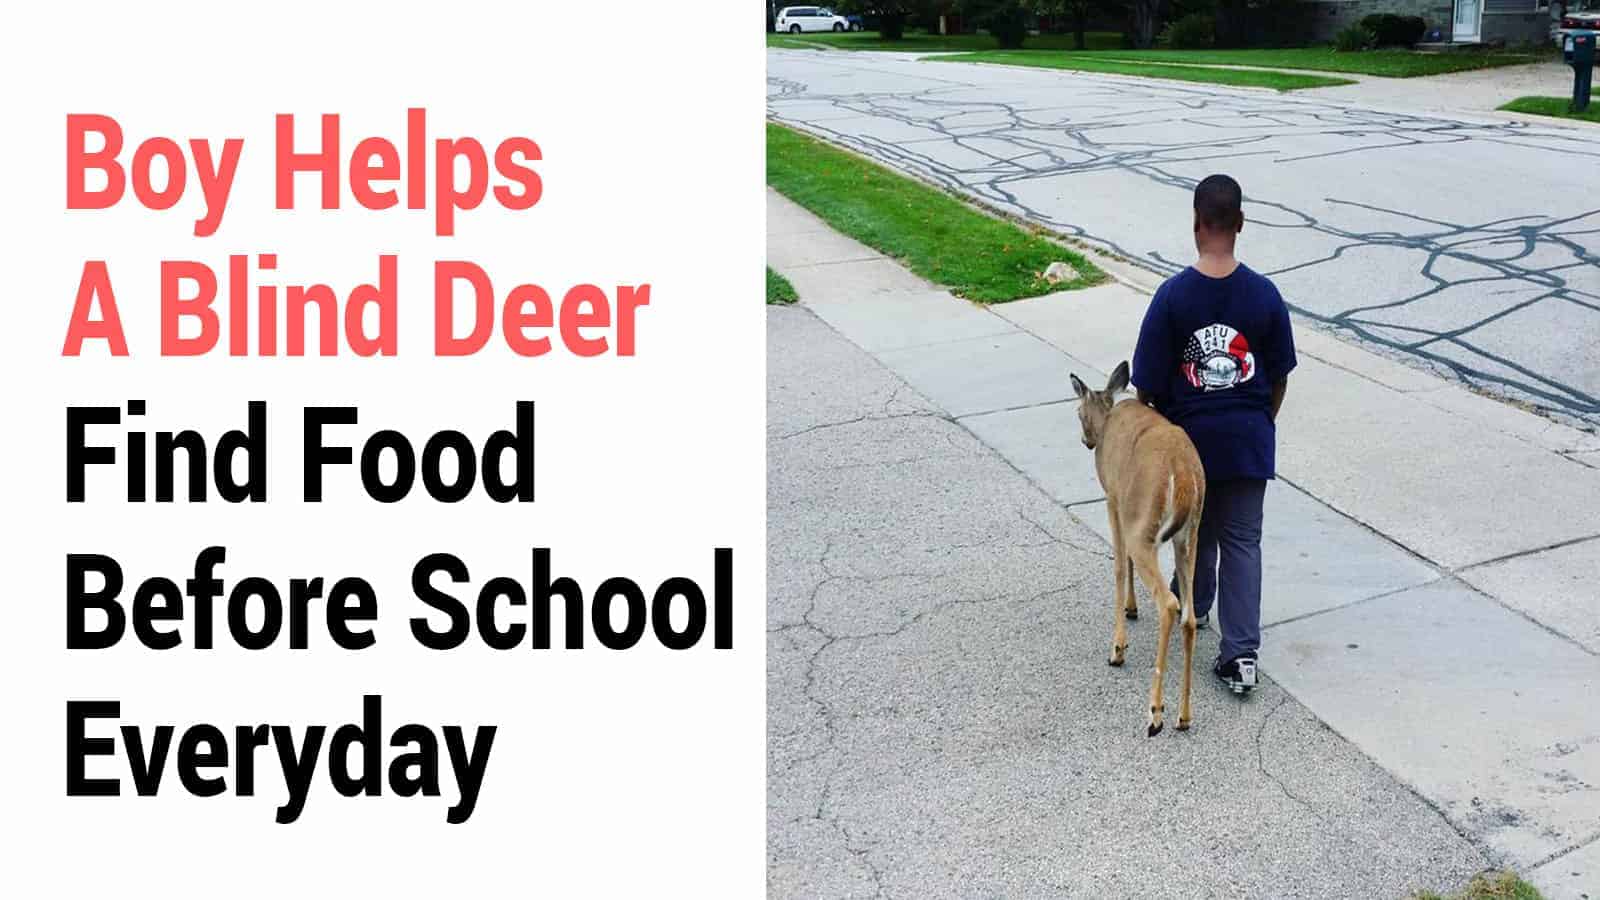 Boy Helps A Blind Deer Find Food Before School Everyday